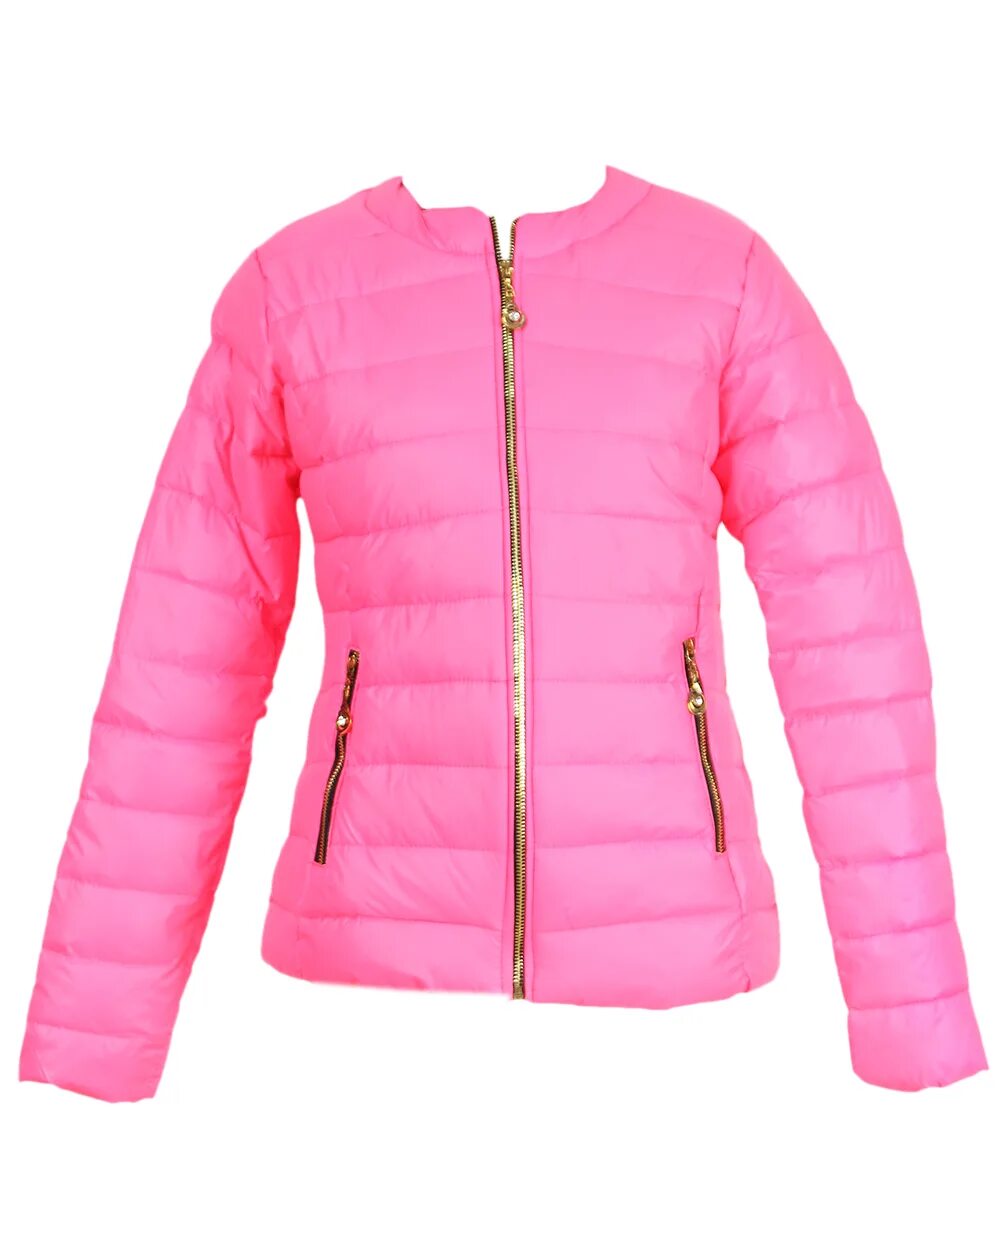 Купить облегченную куртку. Облегченная куртка. Облегченная куртка женская. Розовая куртка женская короткая.